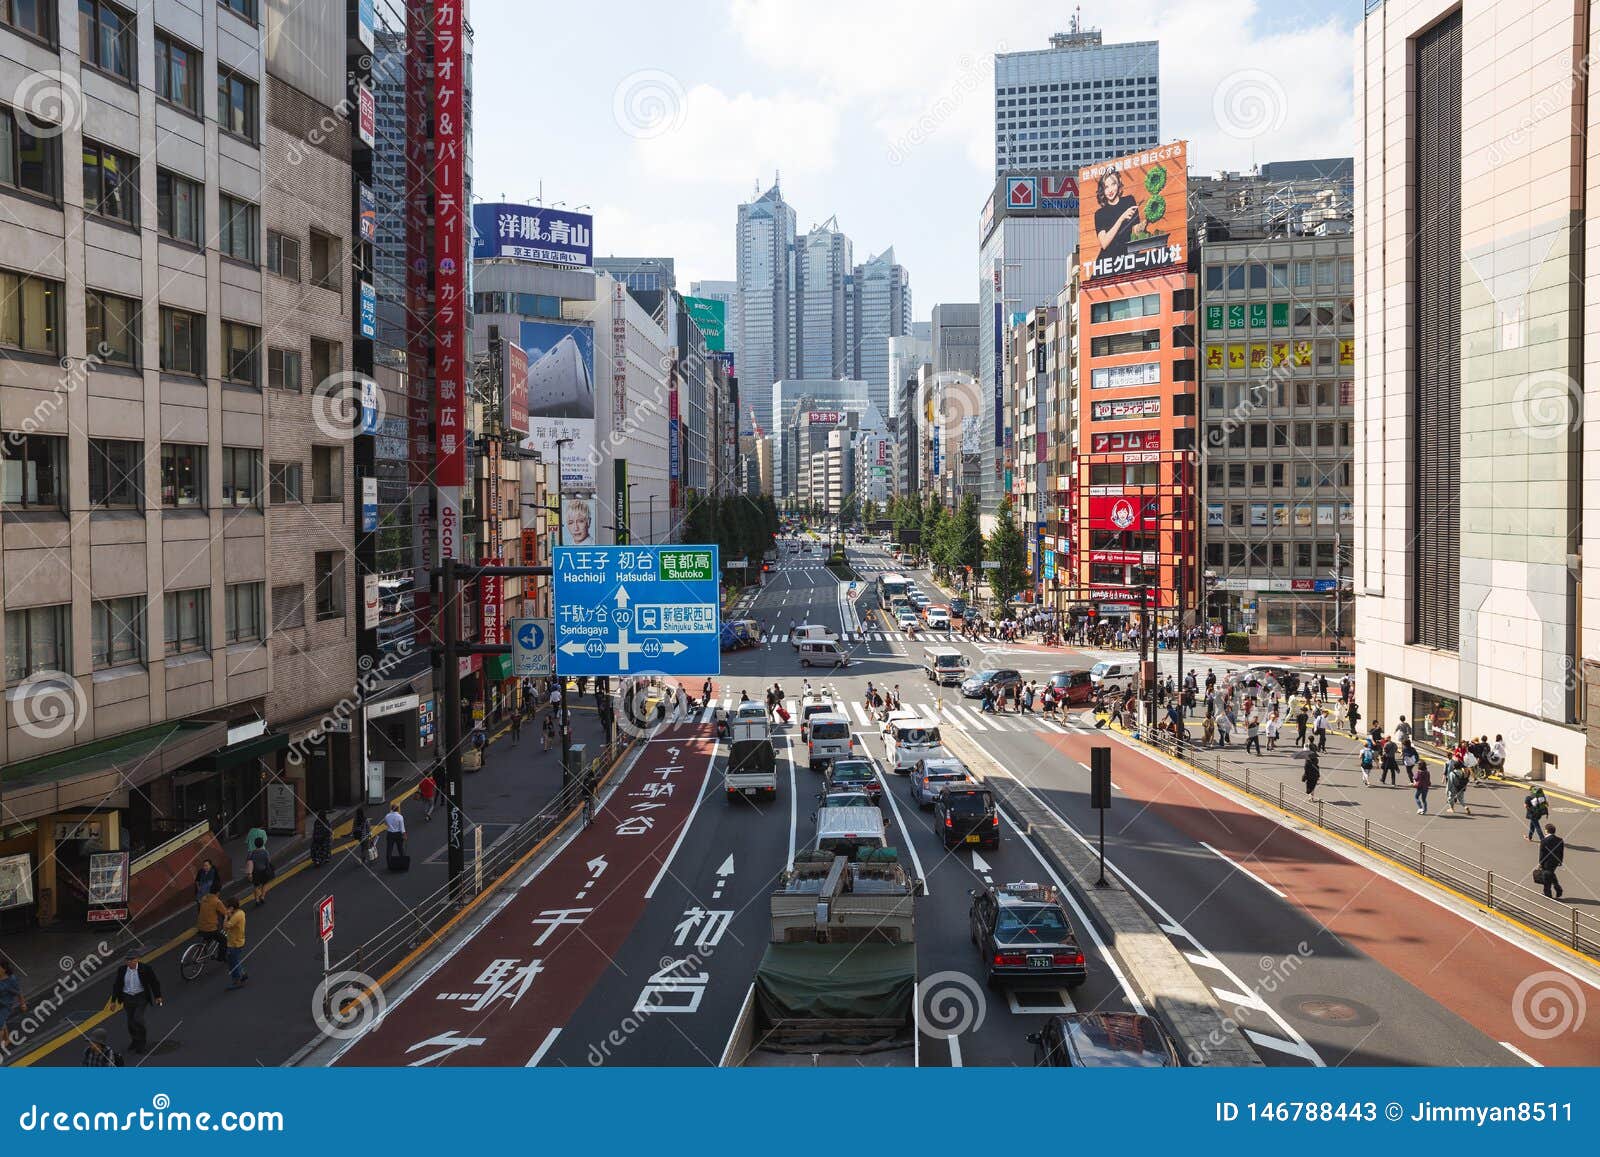 152 斑马线新宿东京日本张图片 来自dreamstime的免费和免版税图片